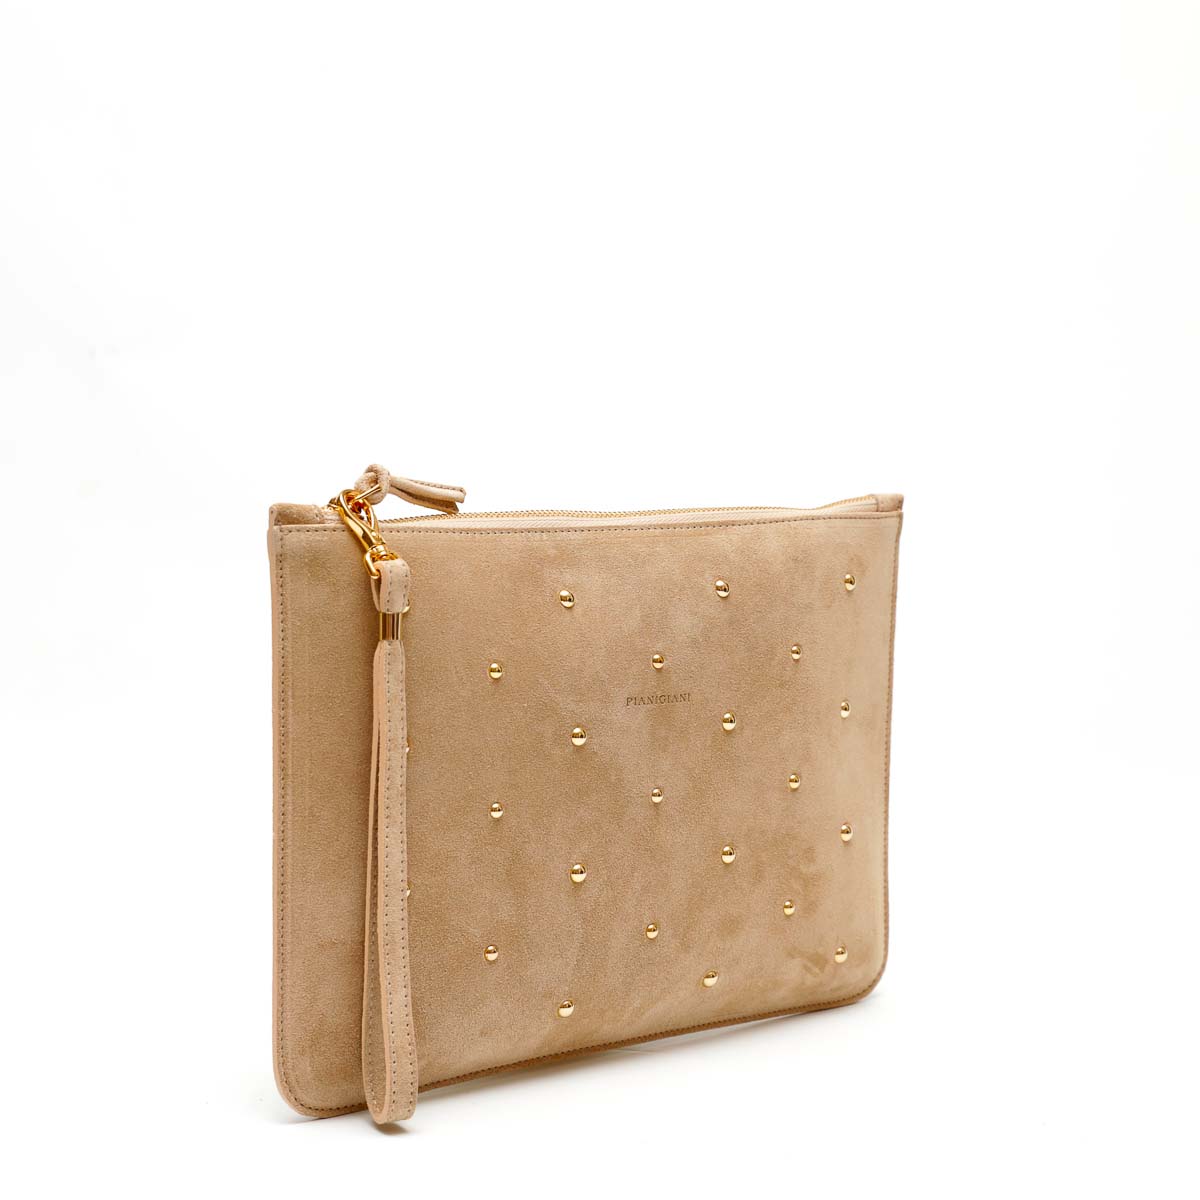 Rose bag, borsa a mano in pelle scamosciata beige con borchie decorative color oro, prodotta da pianigiani bags